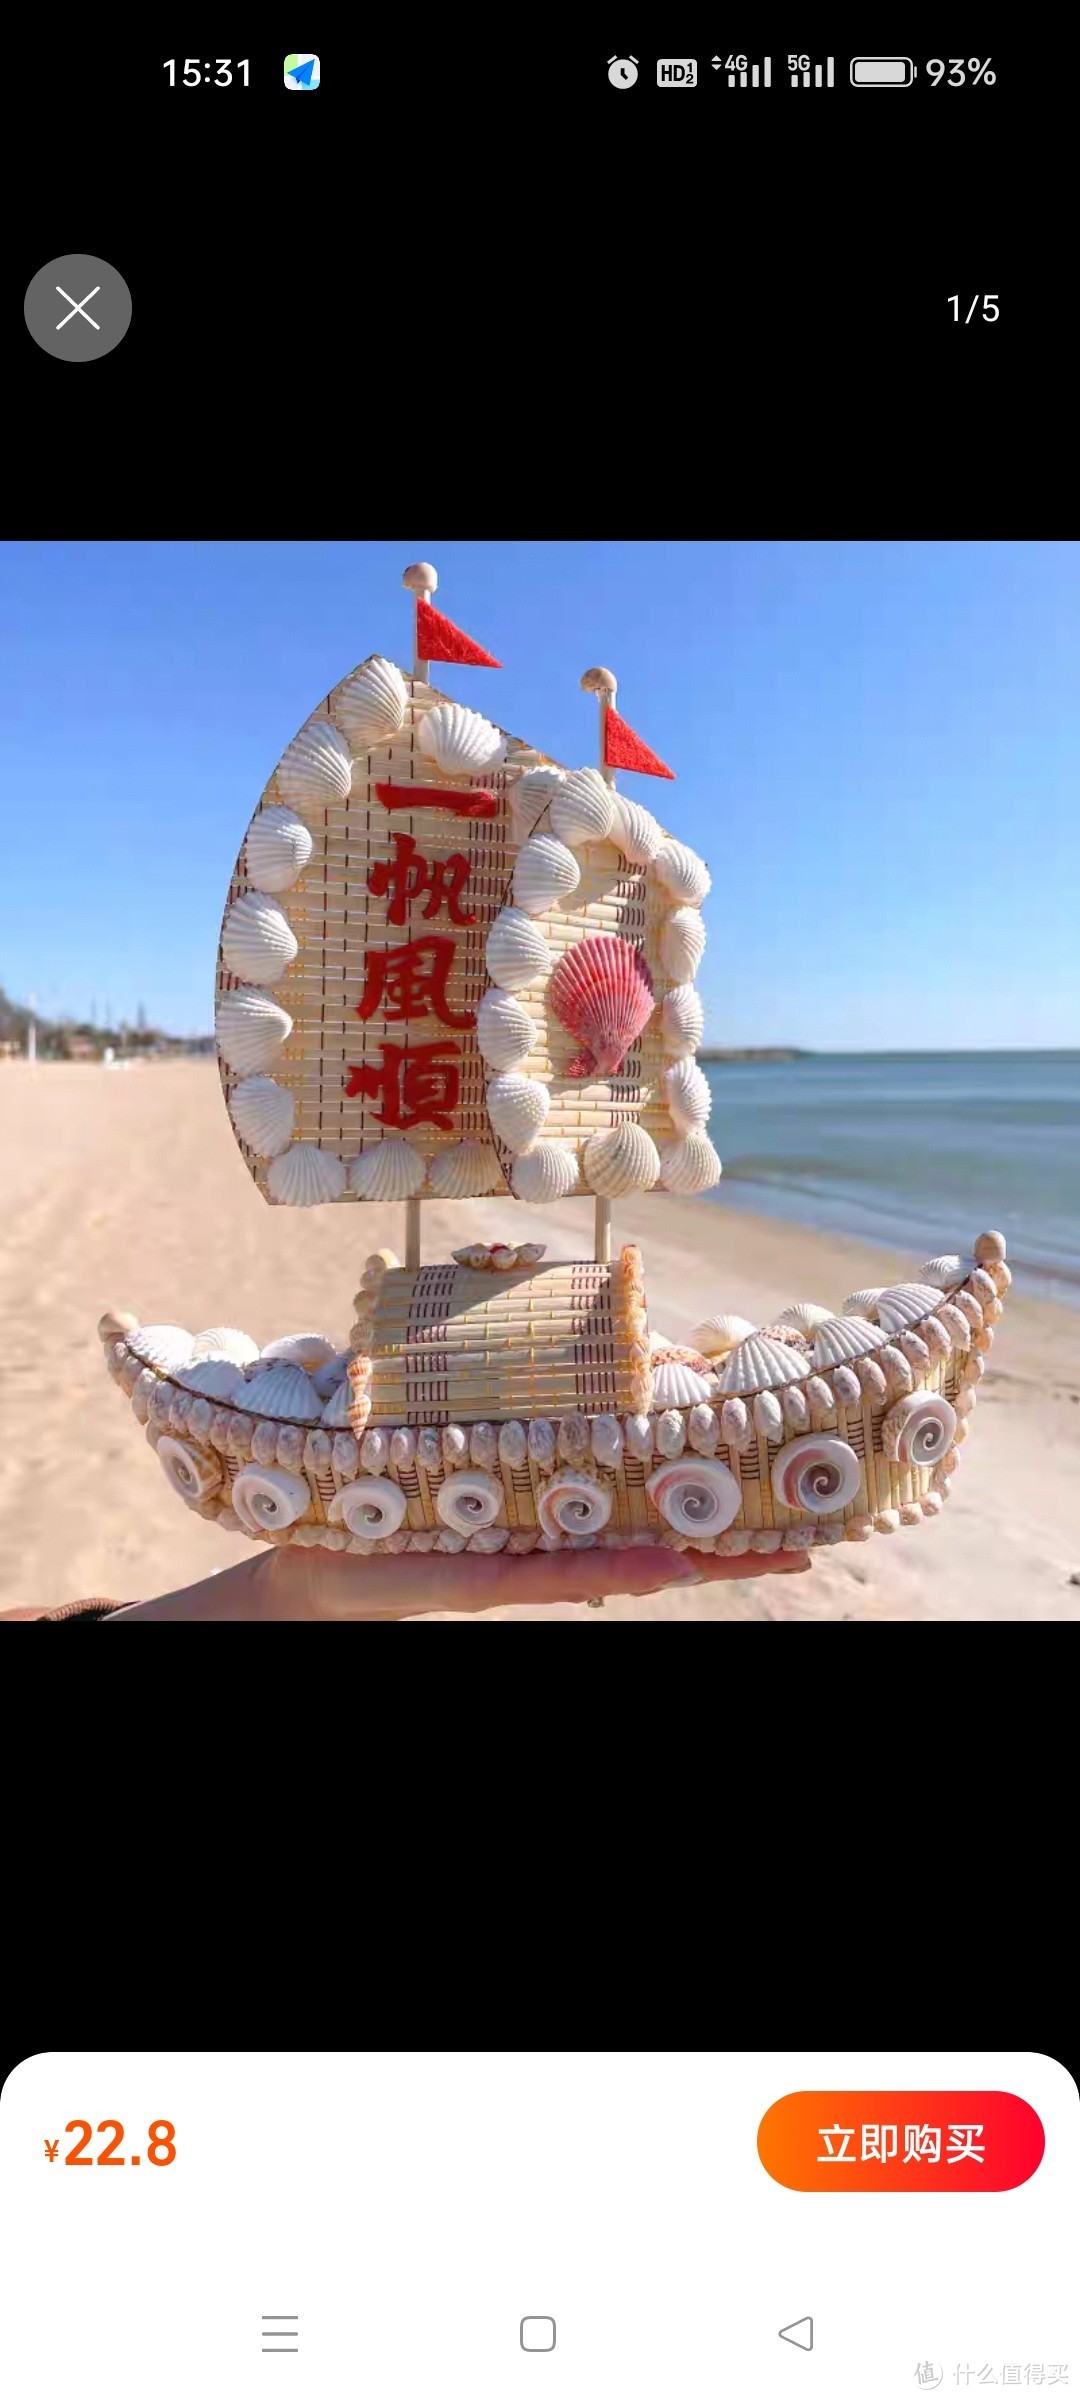 贝壳船一帆风顺礼物海边家居装饰特色工艺品旅游纪念天然海螺摆件